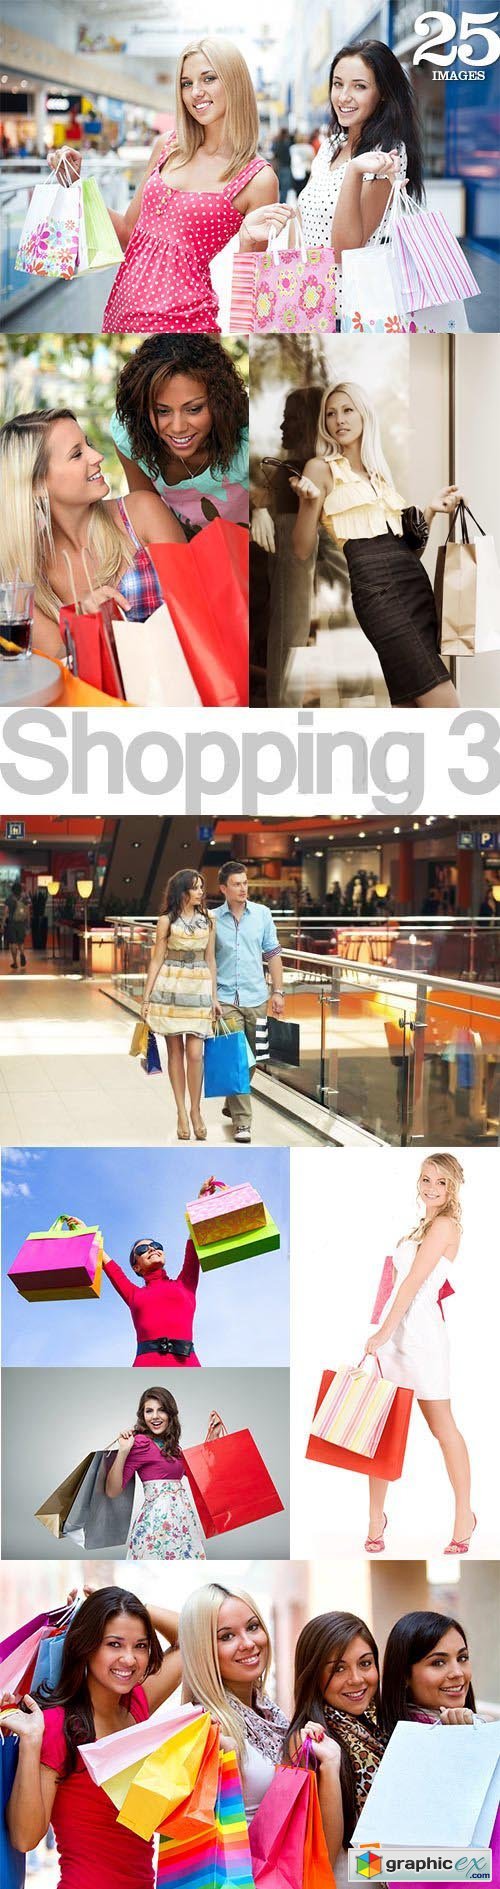 Shopping Collection 3, 25xJPG